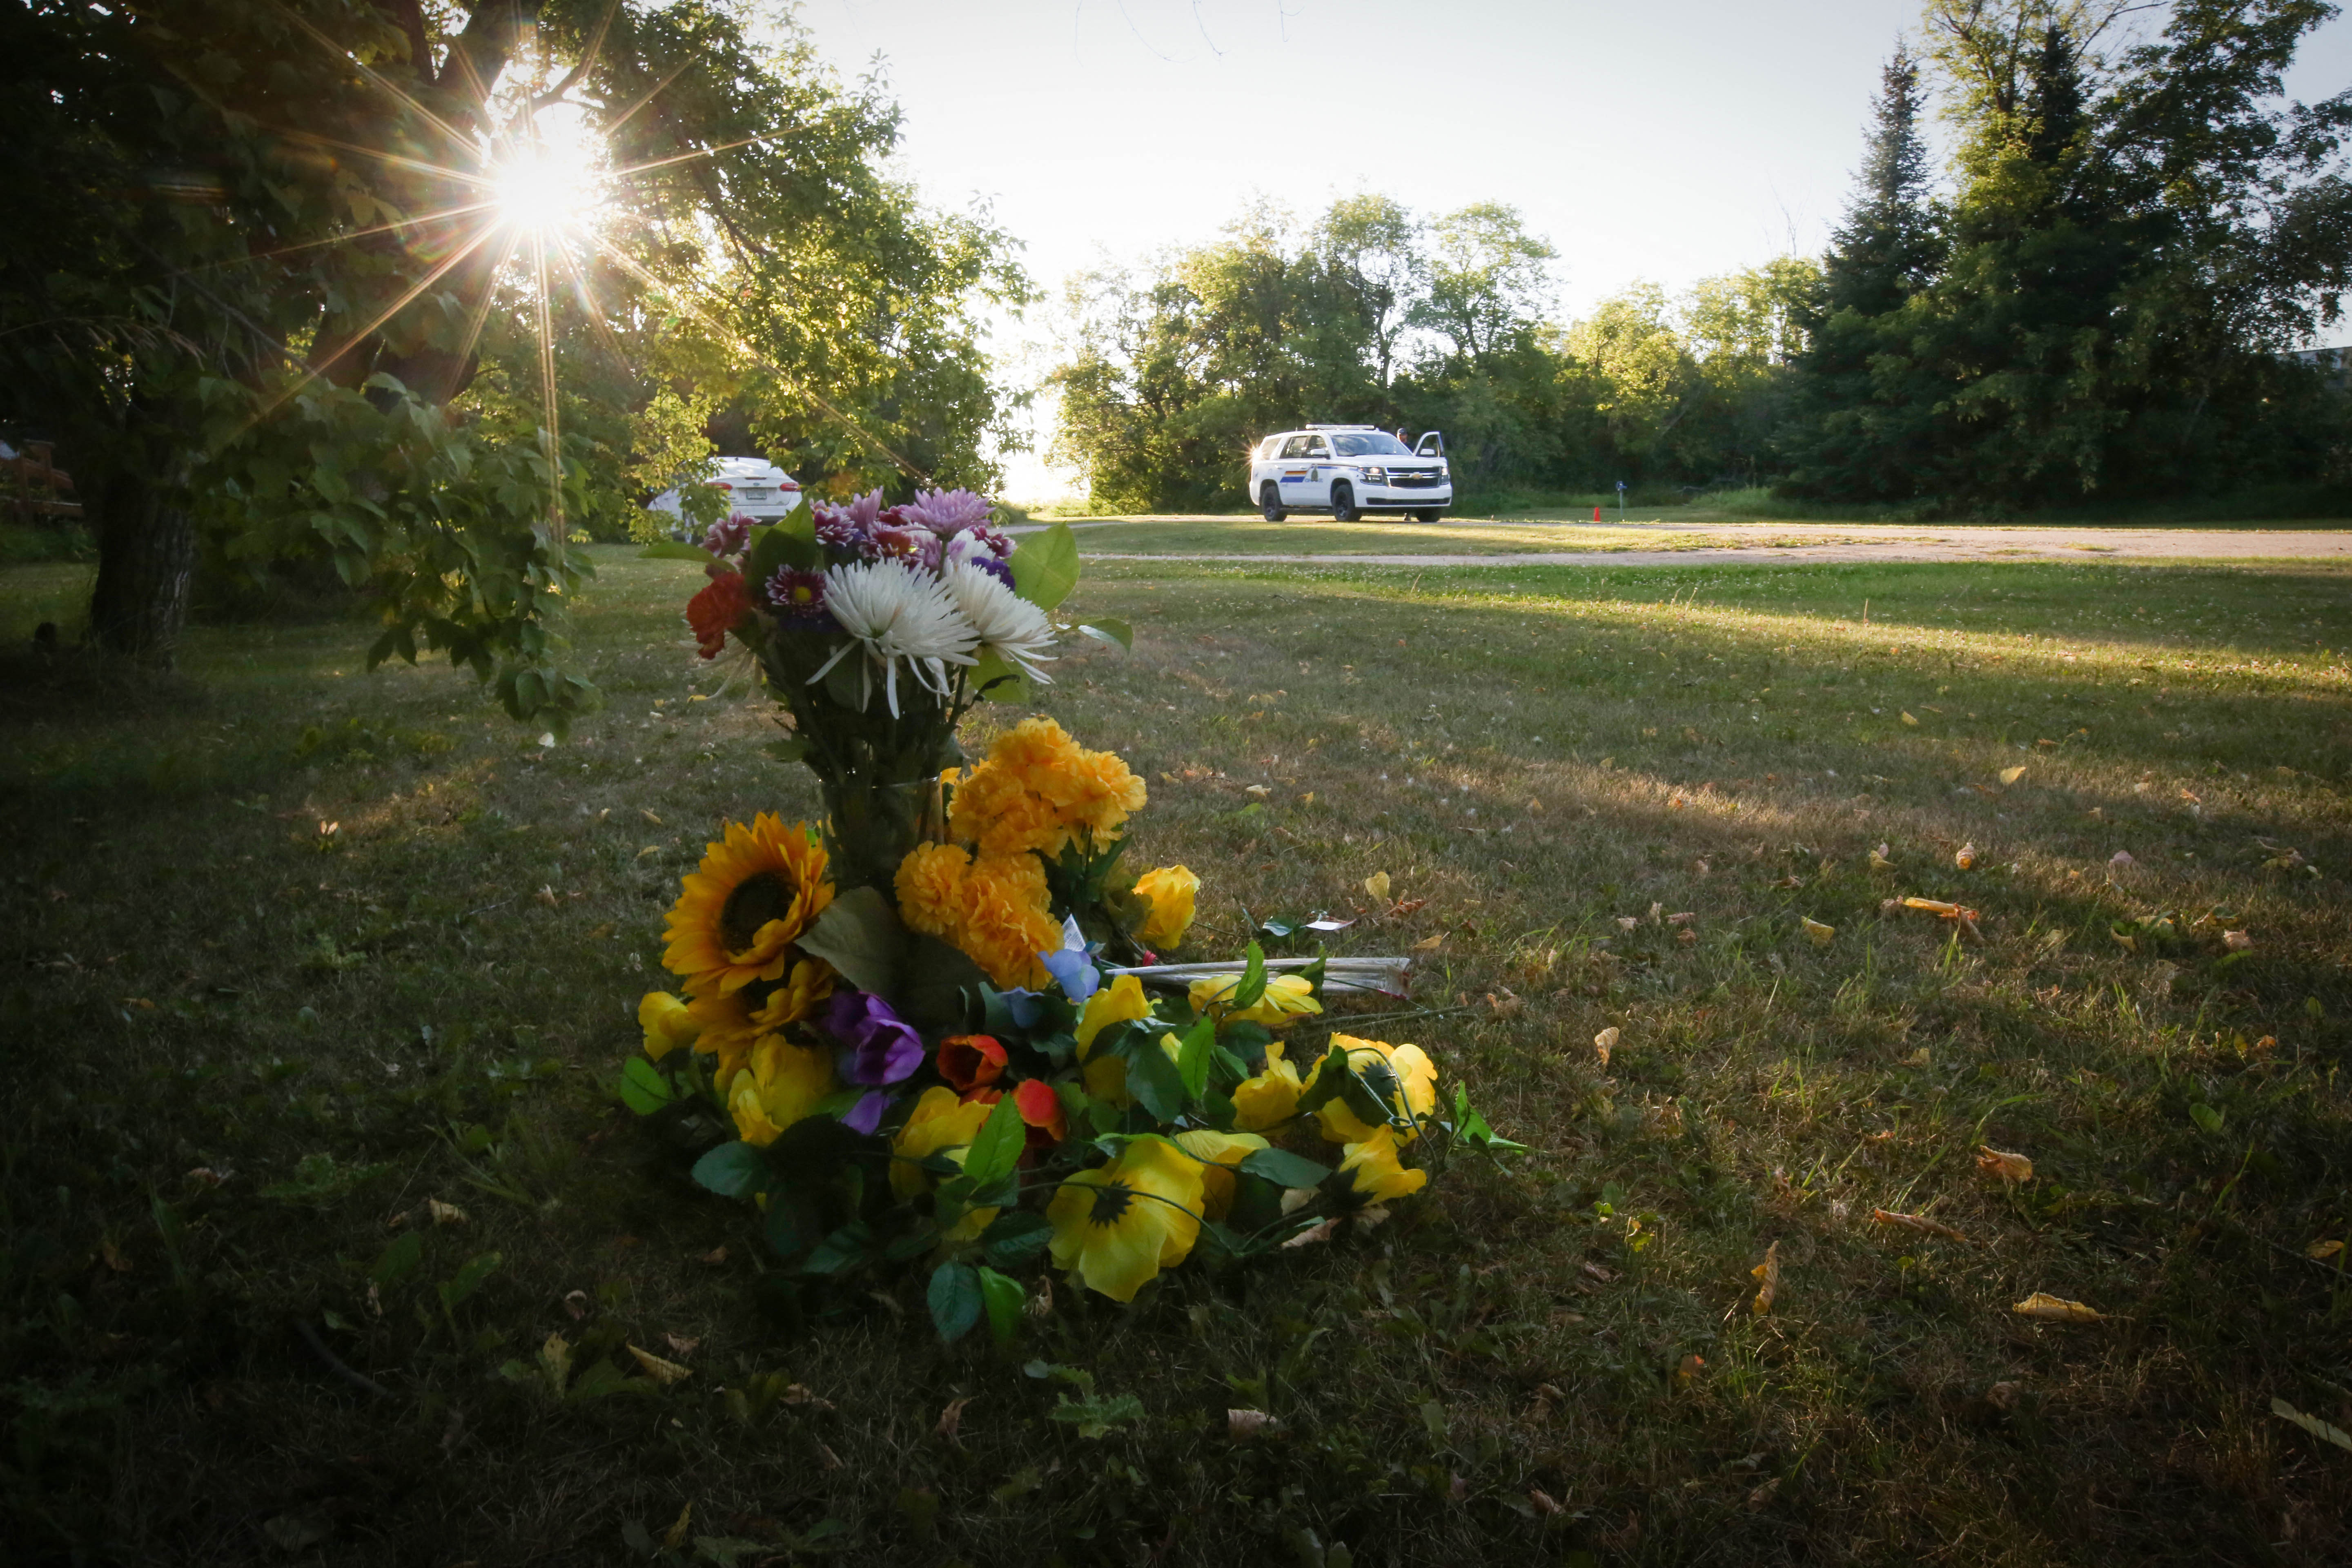 Saskatchewan stabbing suspect Myles Sanderson died from drug overdose: sources